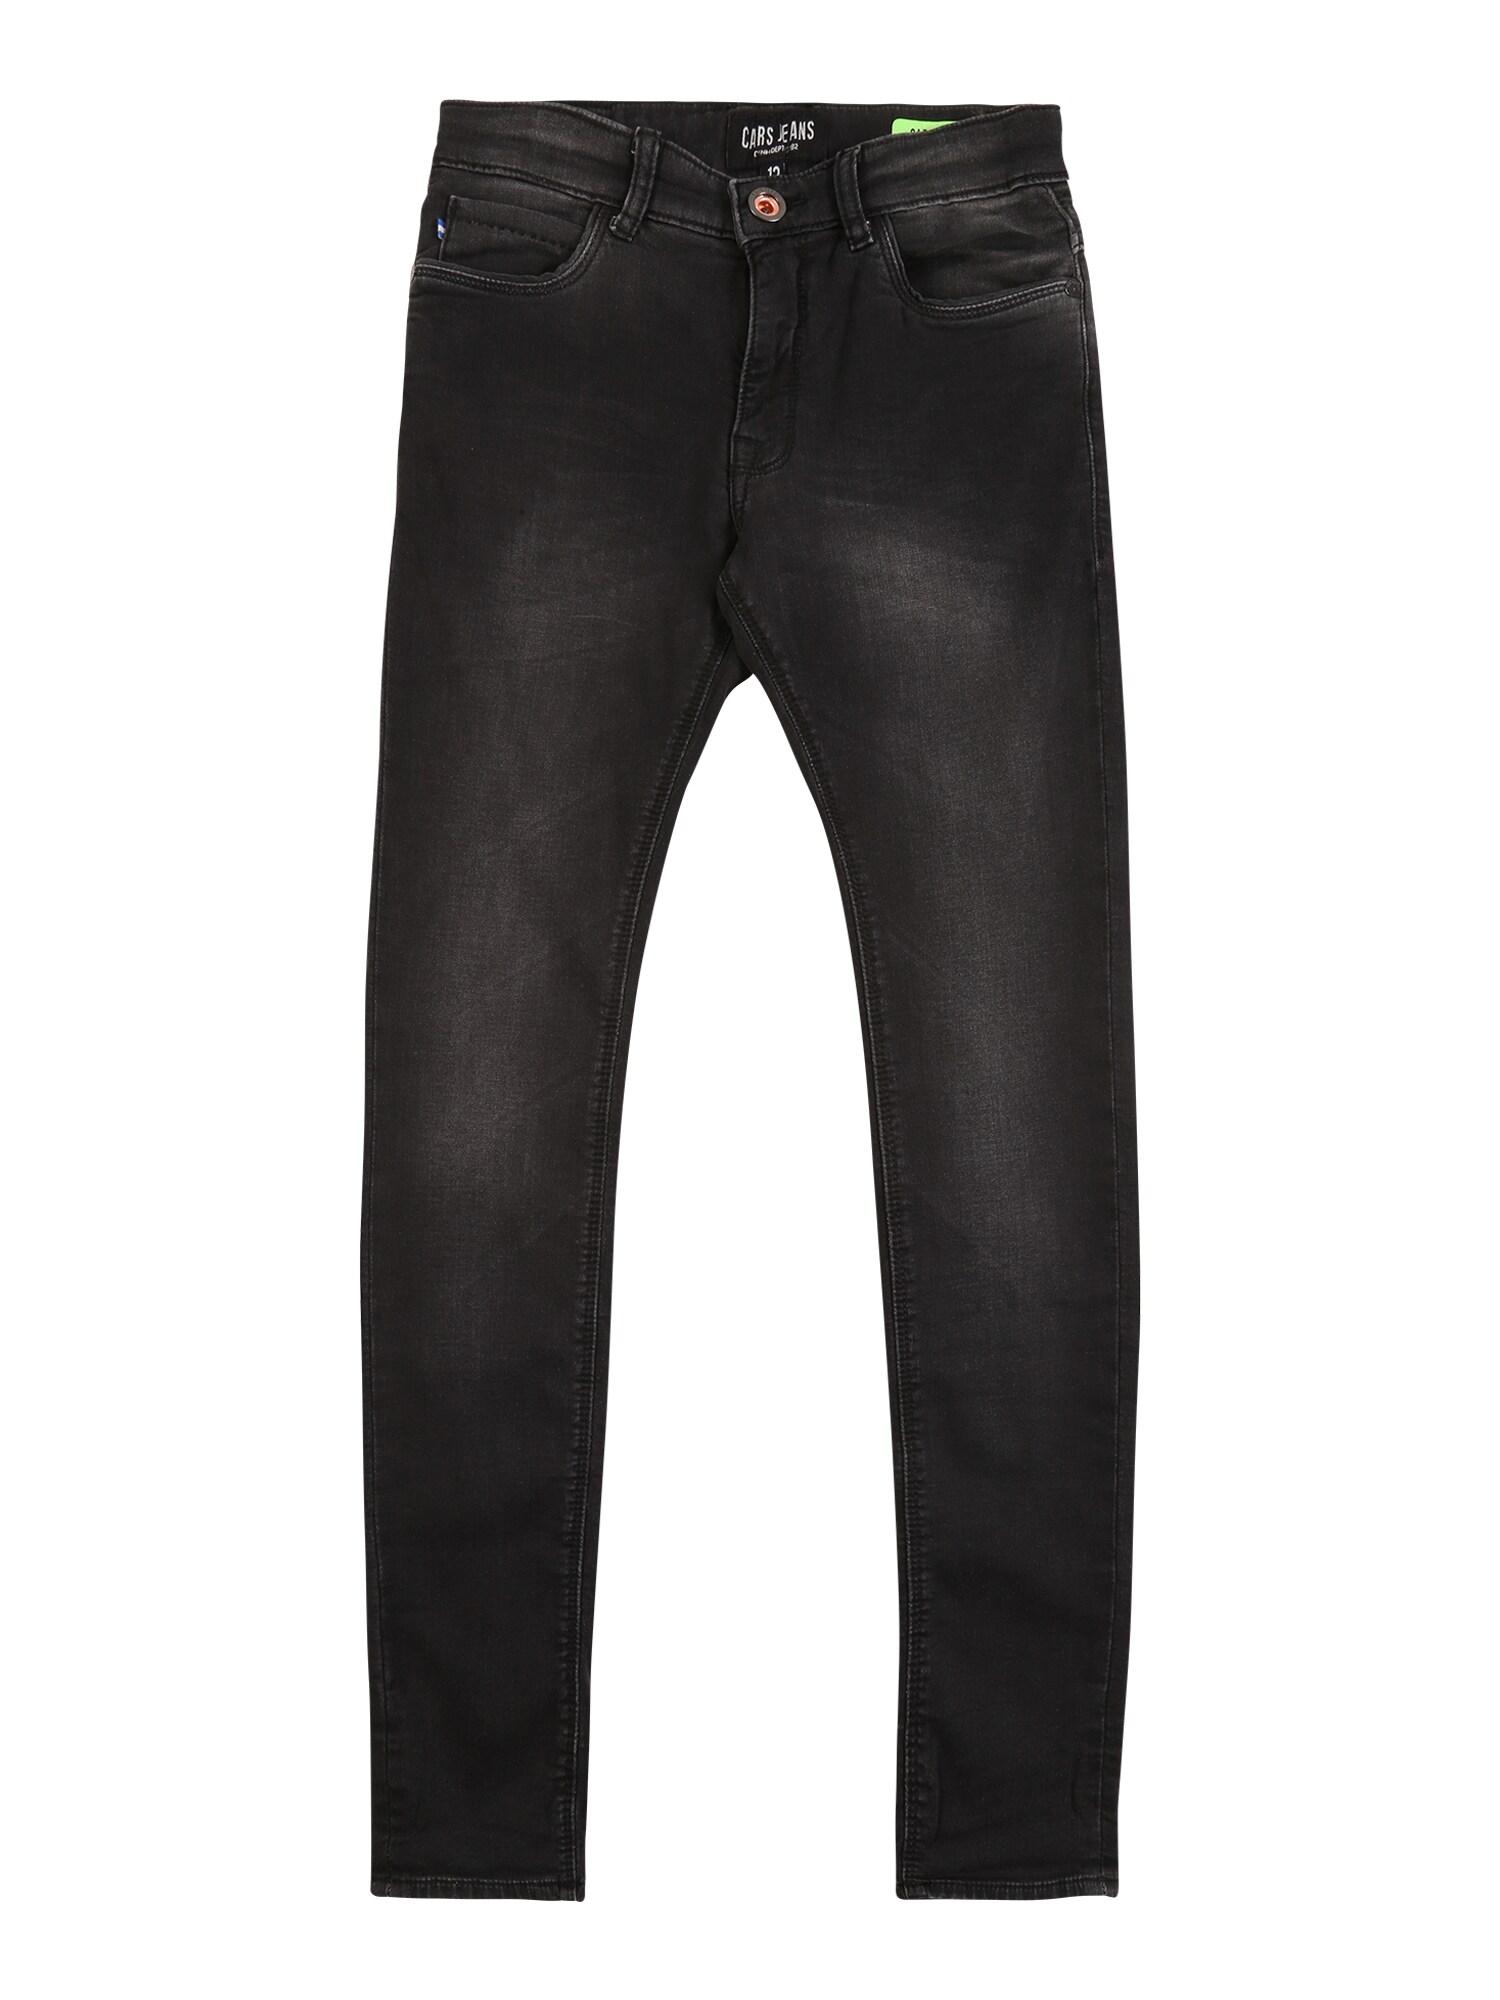 Cars Jeans Džinsai 'ABURGO'  juodo džinso spalva